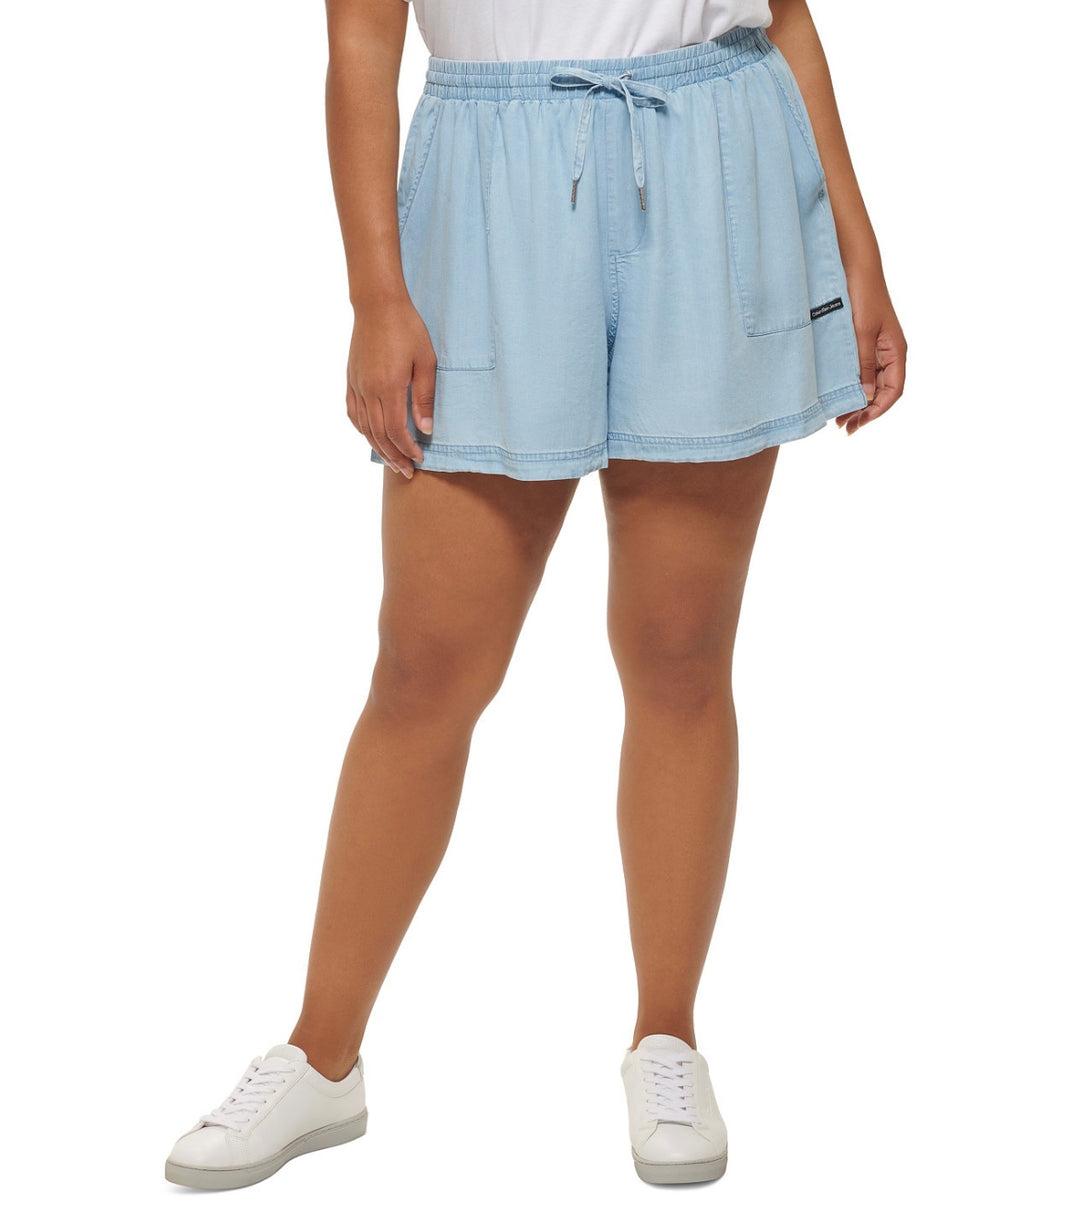 Calvin Klein Jeans Women's Trendy Drawstring Shorts Chambray Blue Plus Size 1X